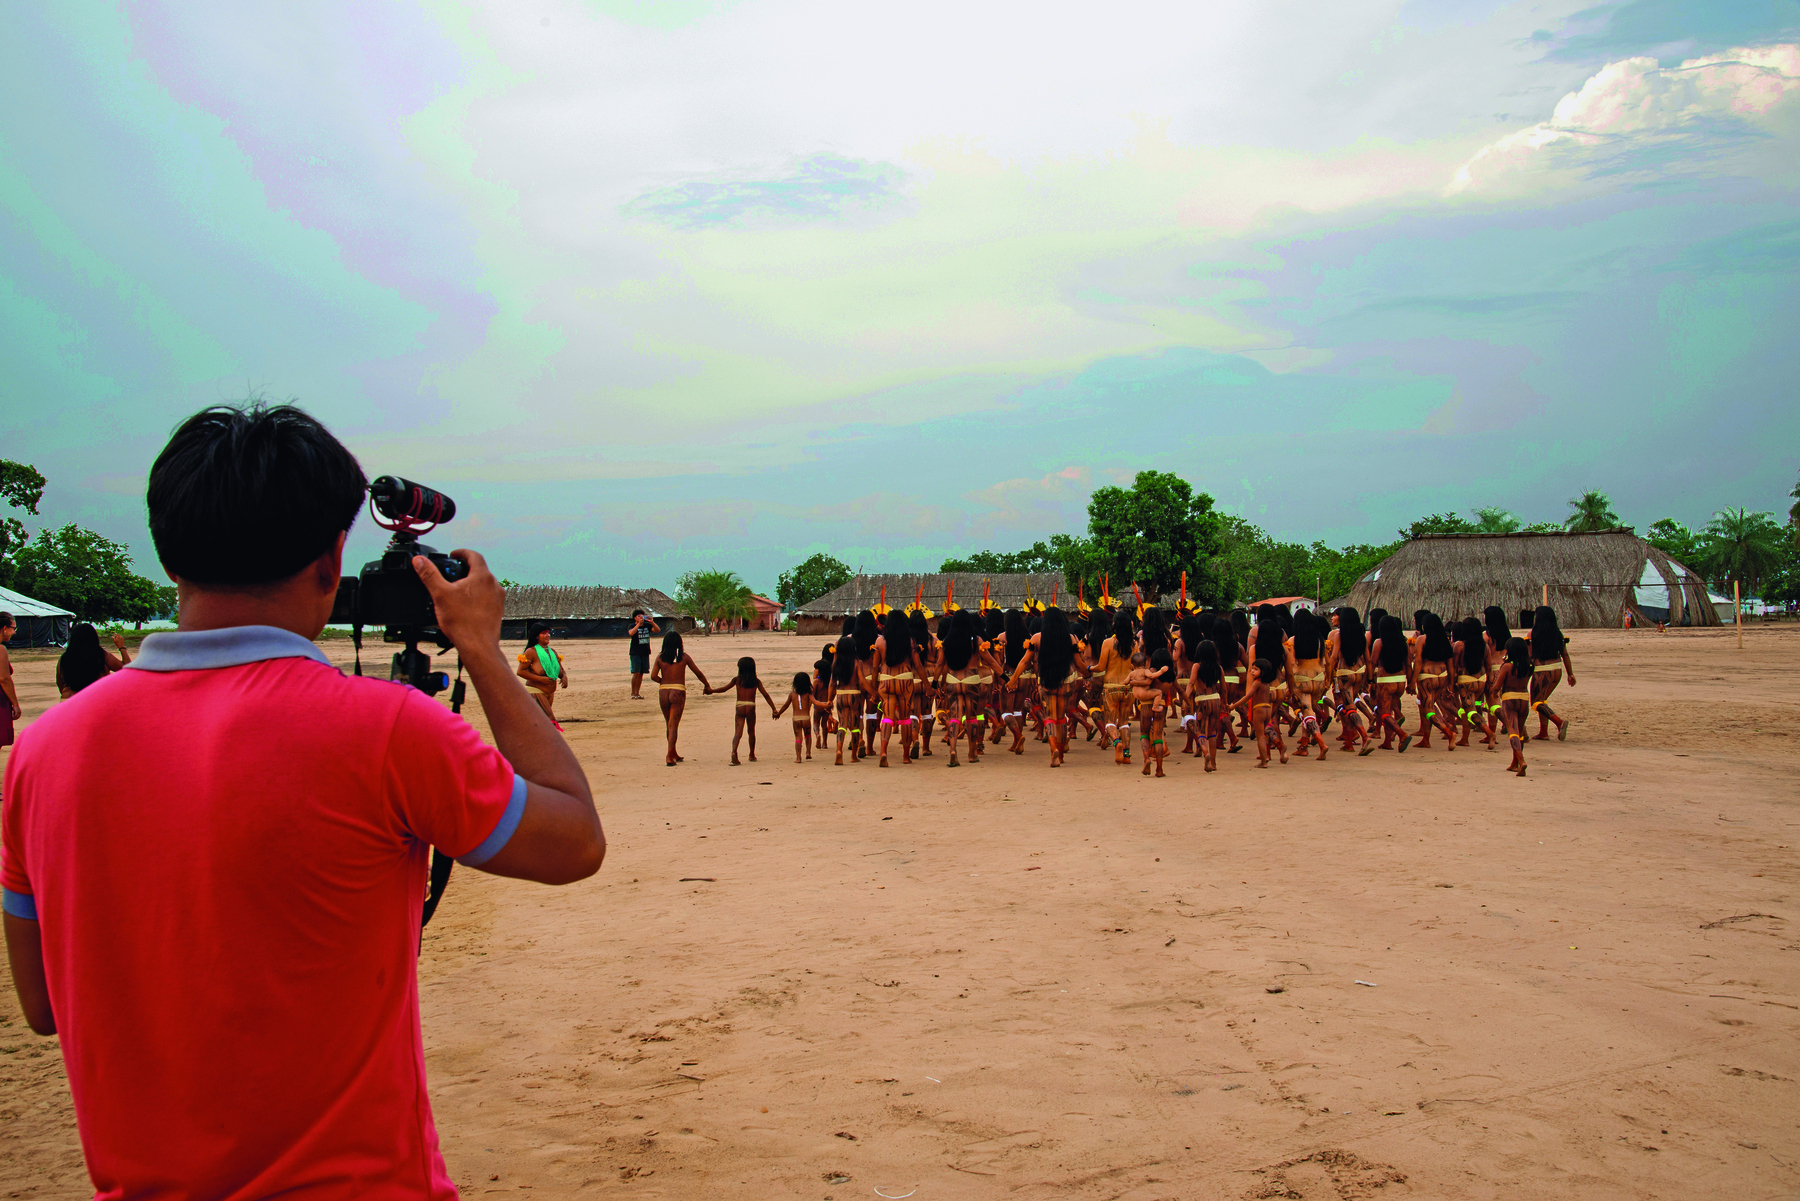 Fotografia. Em primeiro plano, homem indígena visto de costas, segurando uma câmera filmadora e, ao fundo, mulheres indígenas vistas de costas, de mãos dadas, no pátio de uma aldeia.